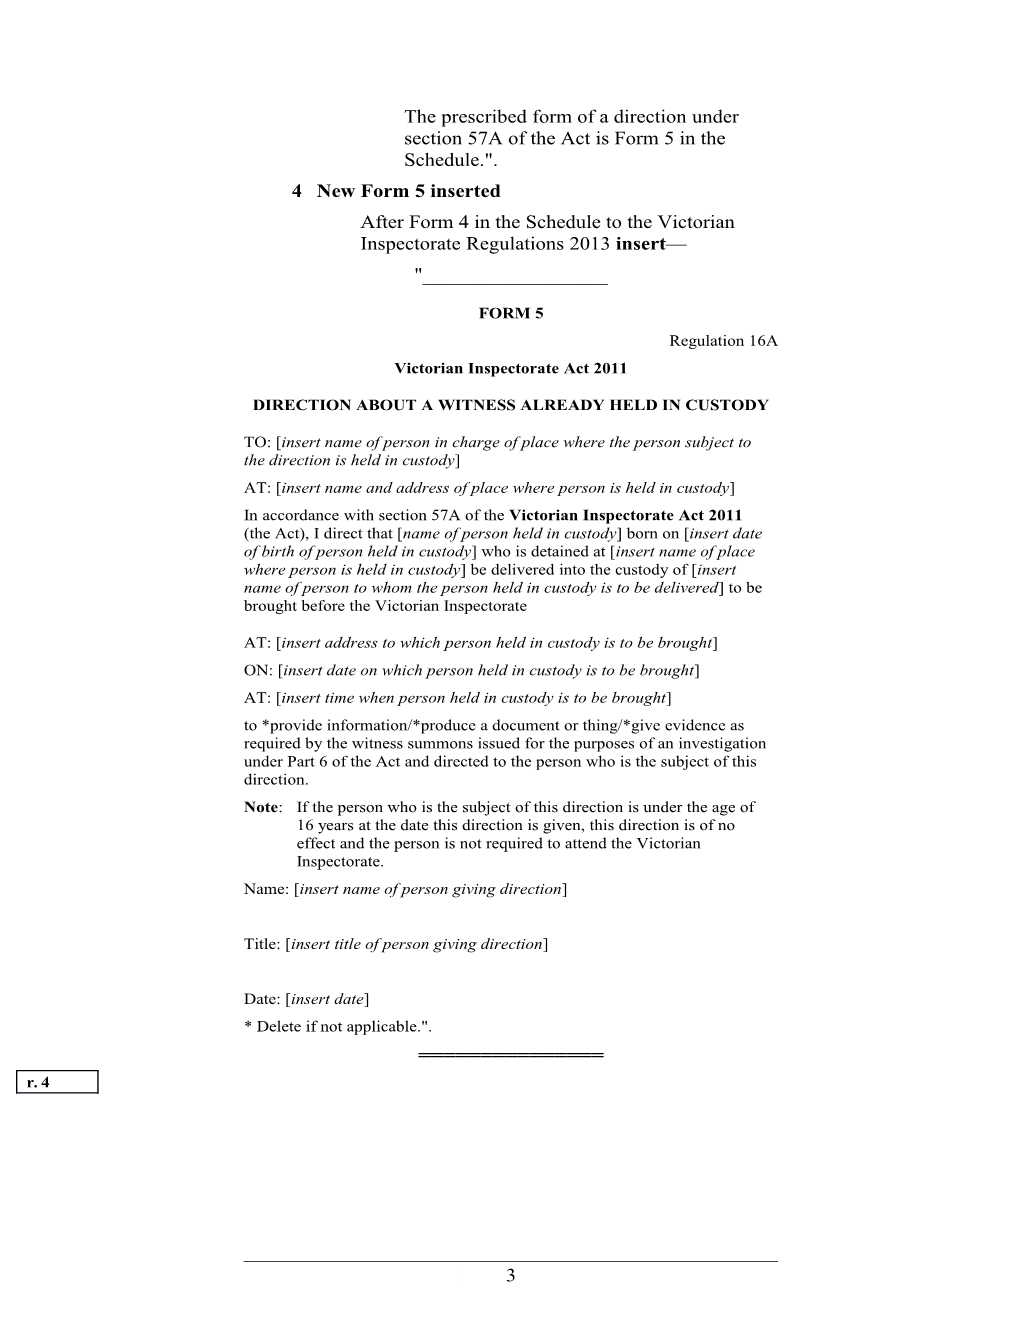 Victorian Inspectorate Amendment Regulations 2014